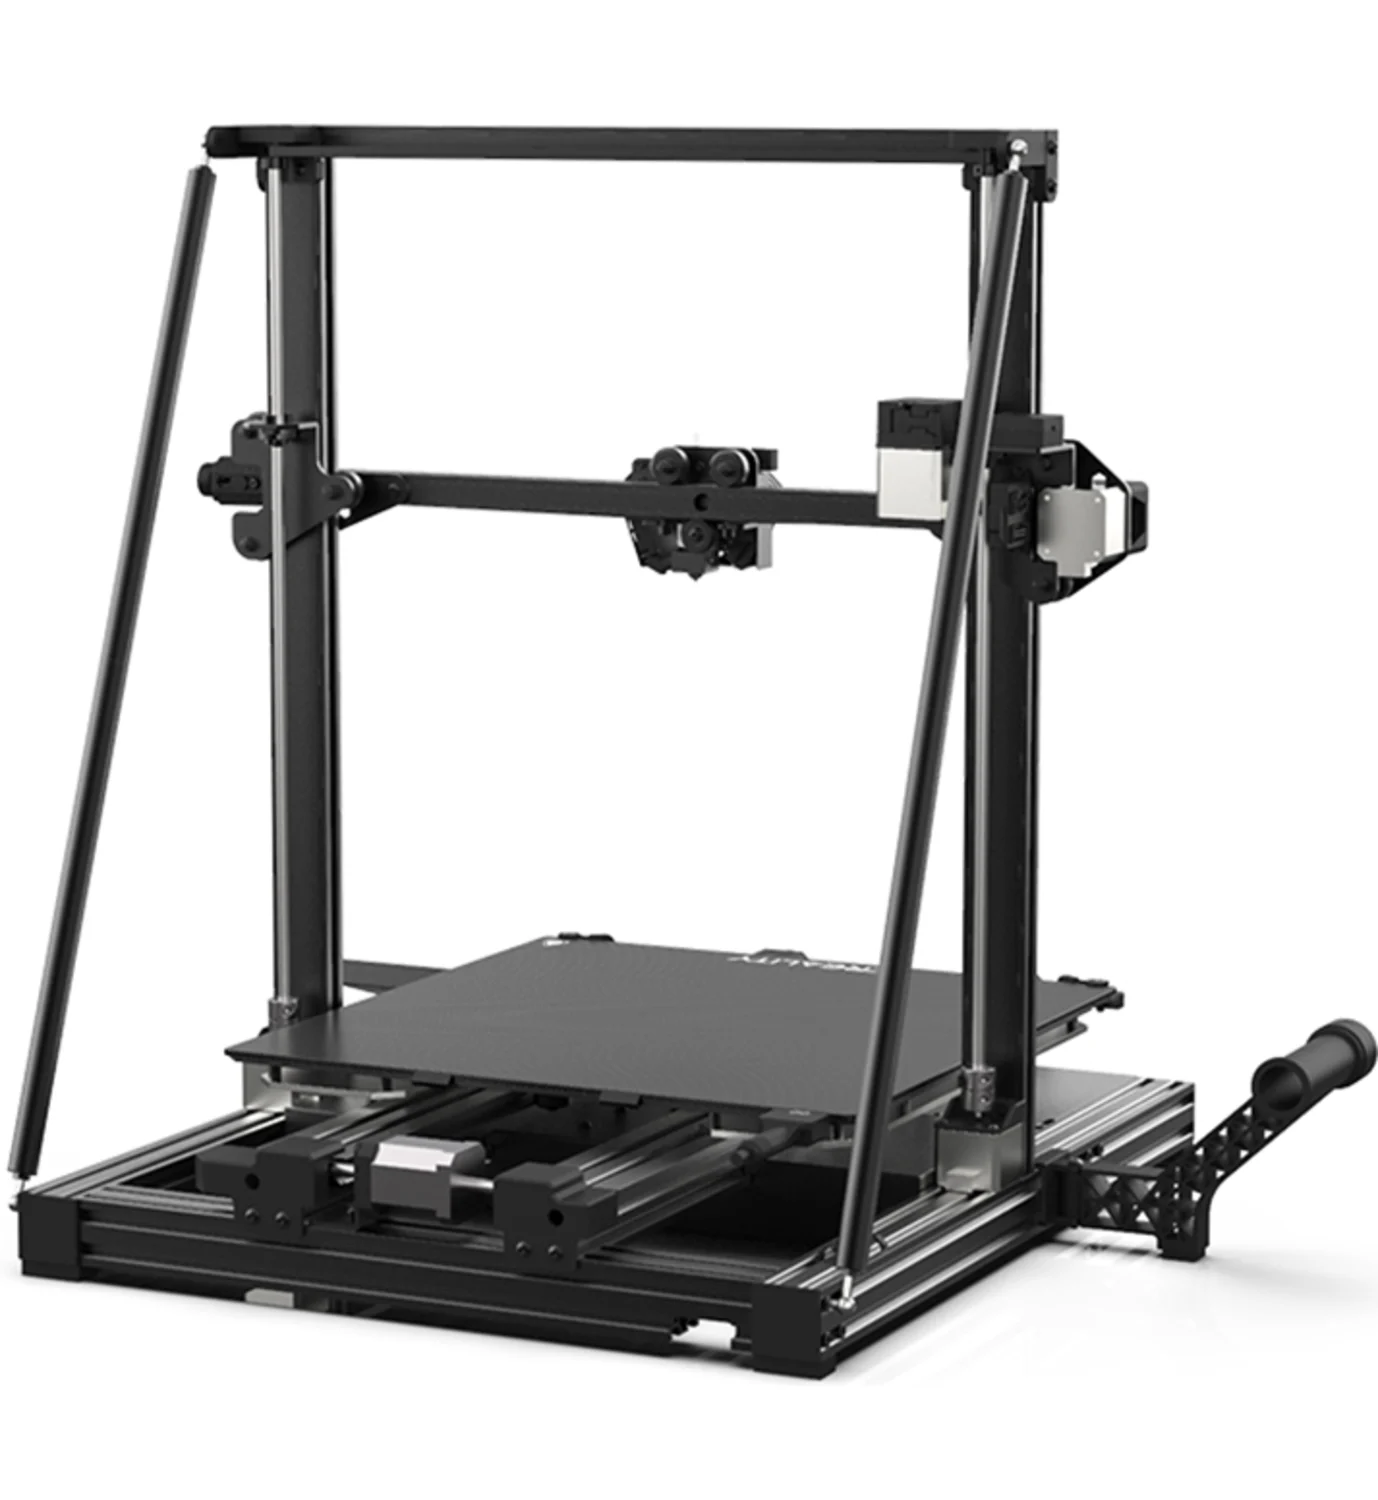 Impressora 3D Creality CR-6 MAX - (400 x 400 x 400mm)